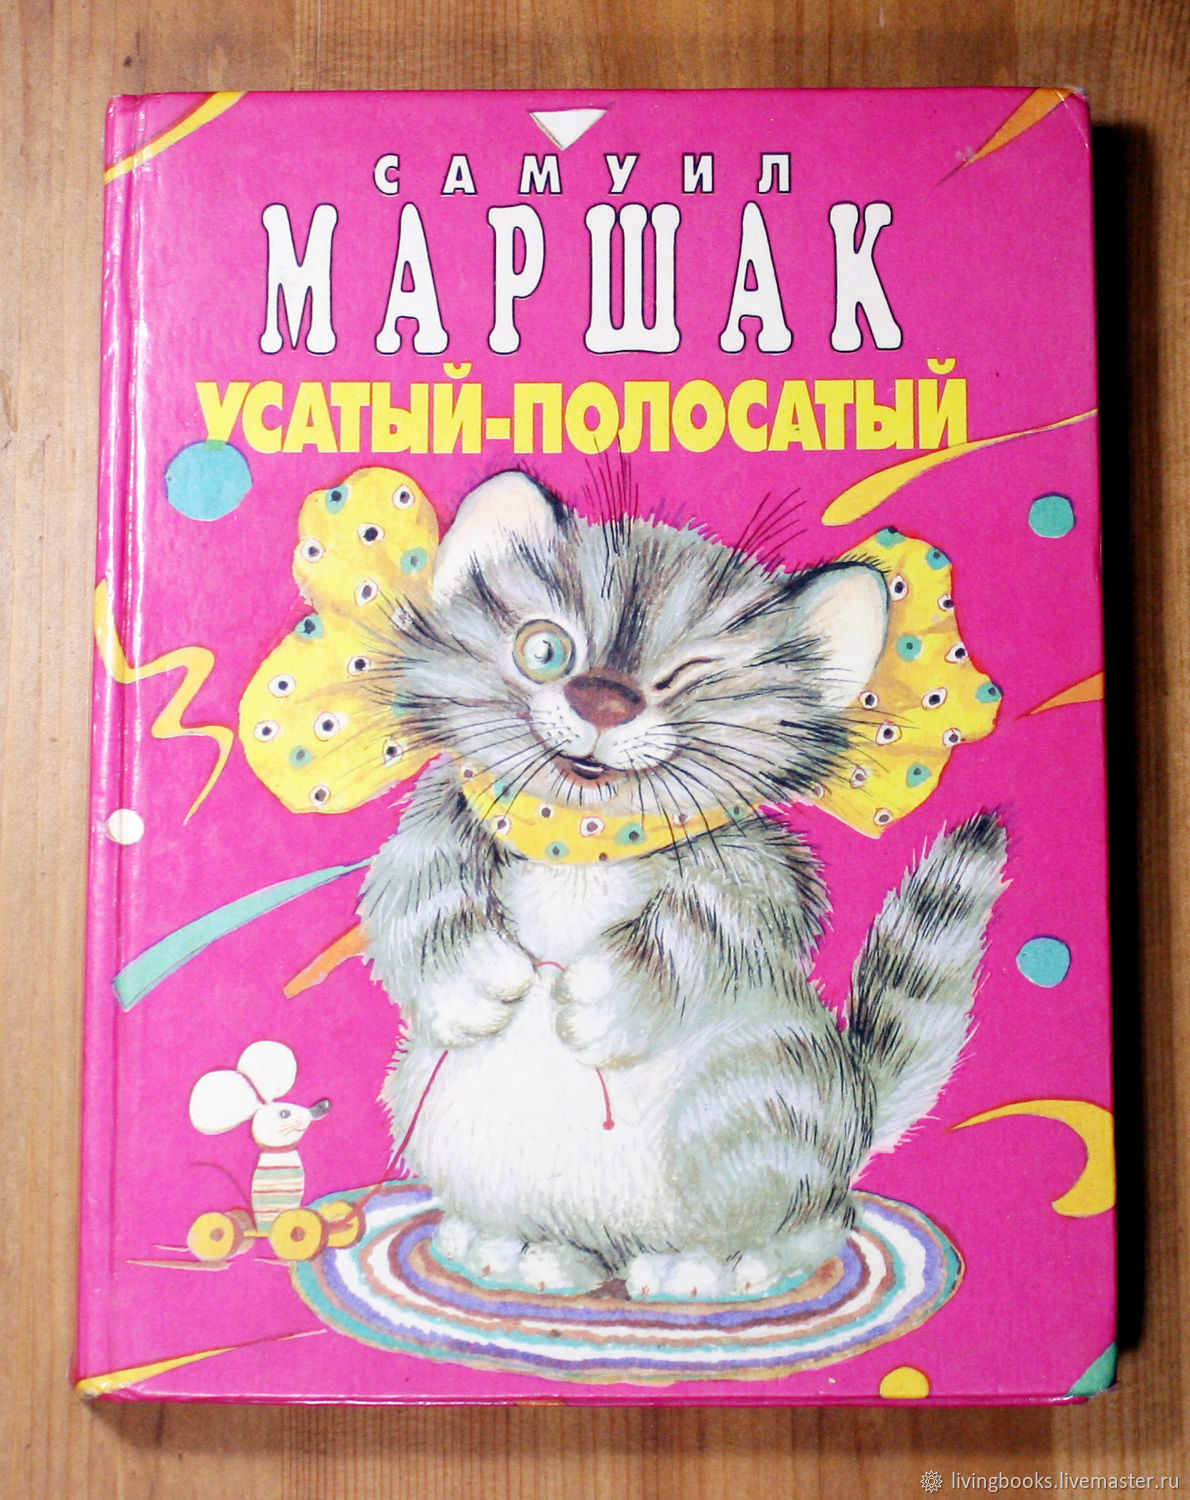 Усатый полосатый книга книги Самуила Маршака